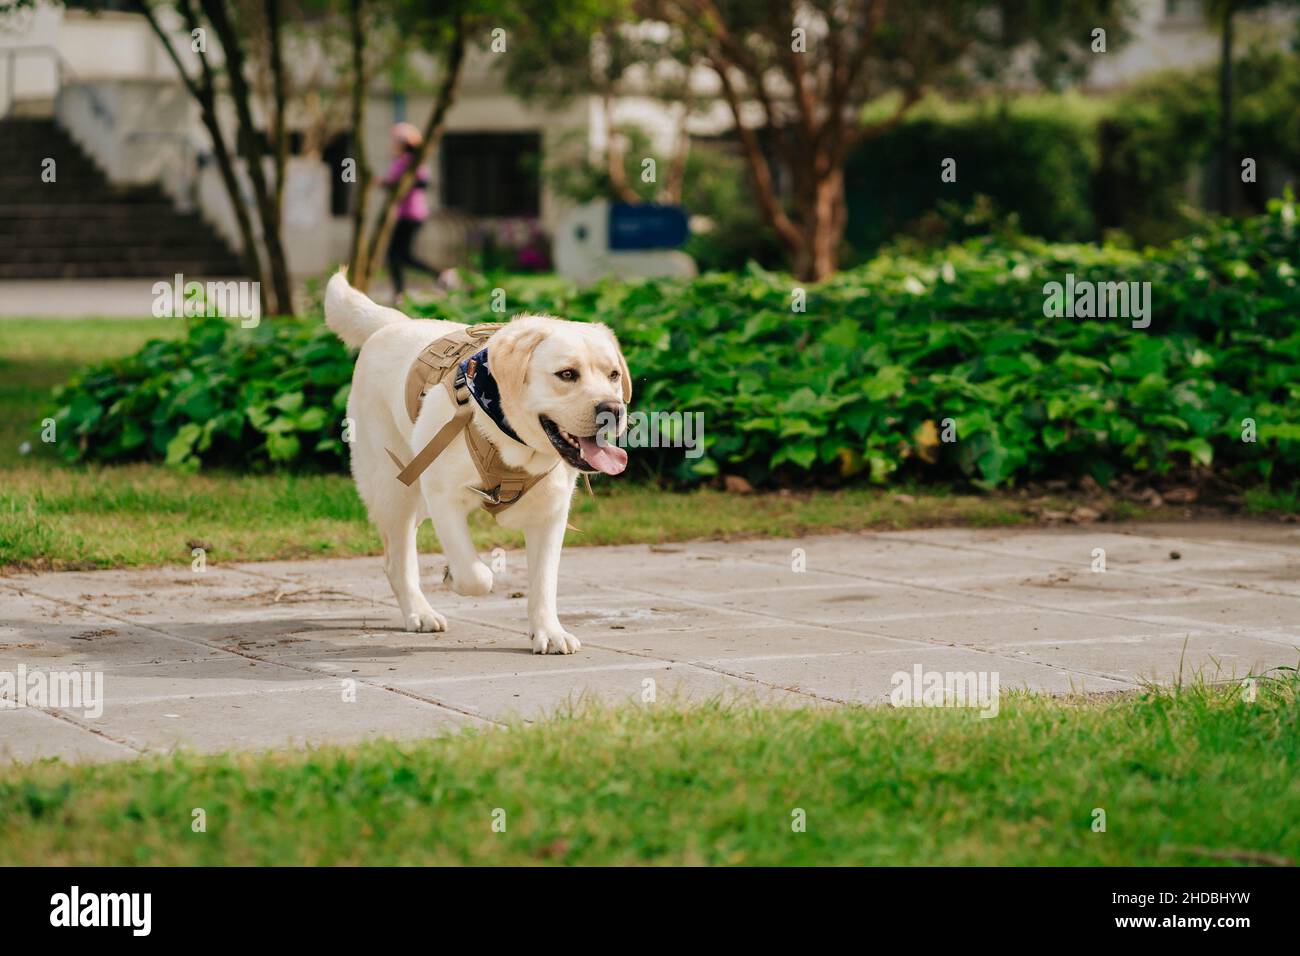 Adorabile Labrador Retriever cane avere un buon tempo in un parco all'aperto Foto Stock